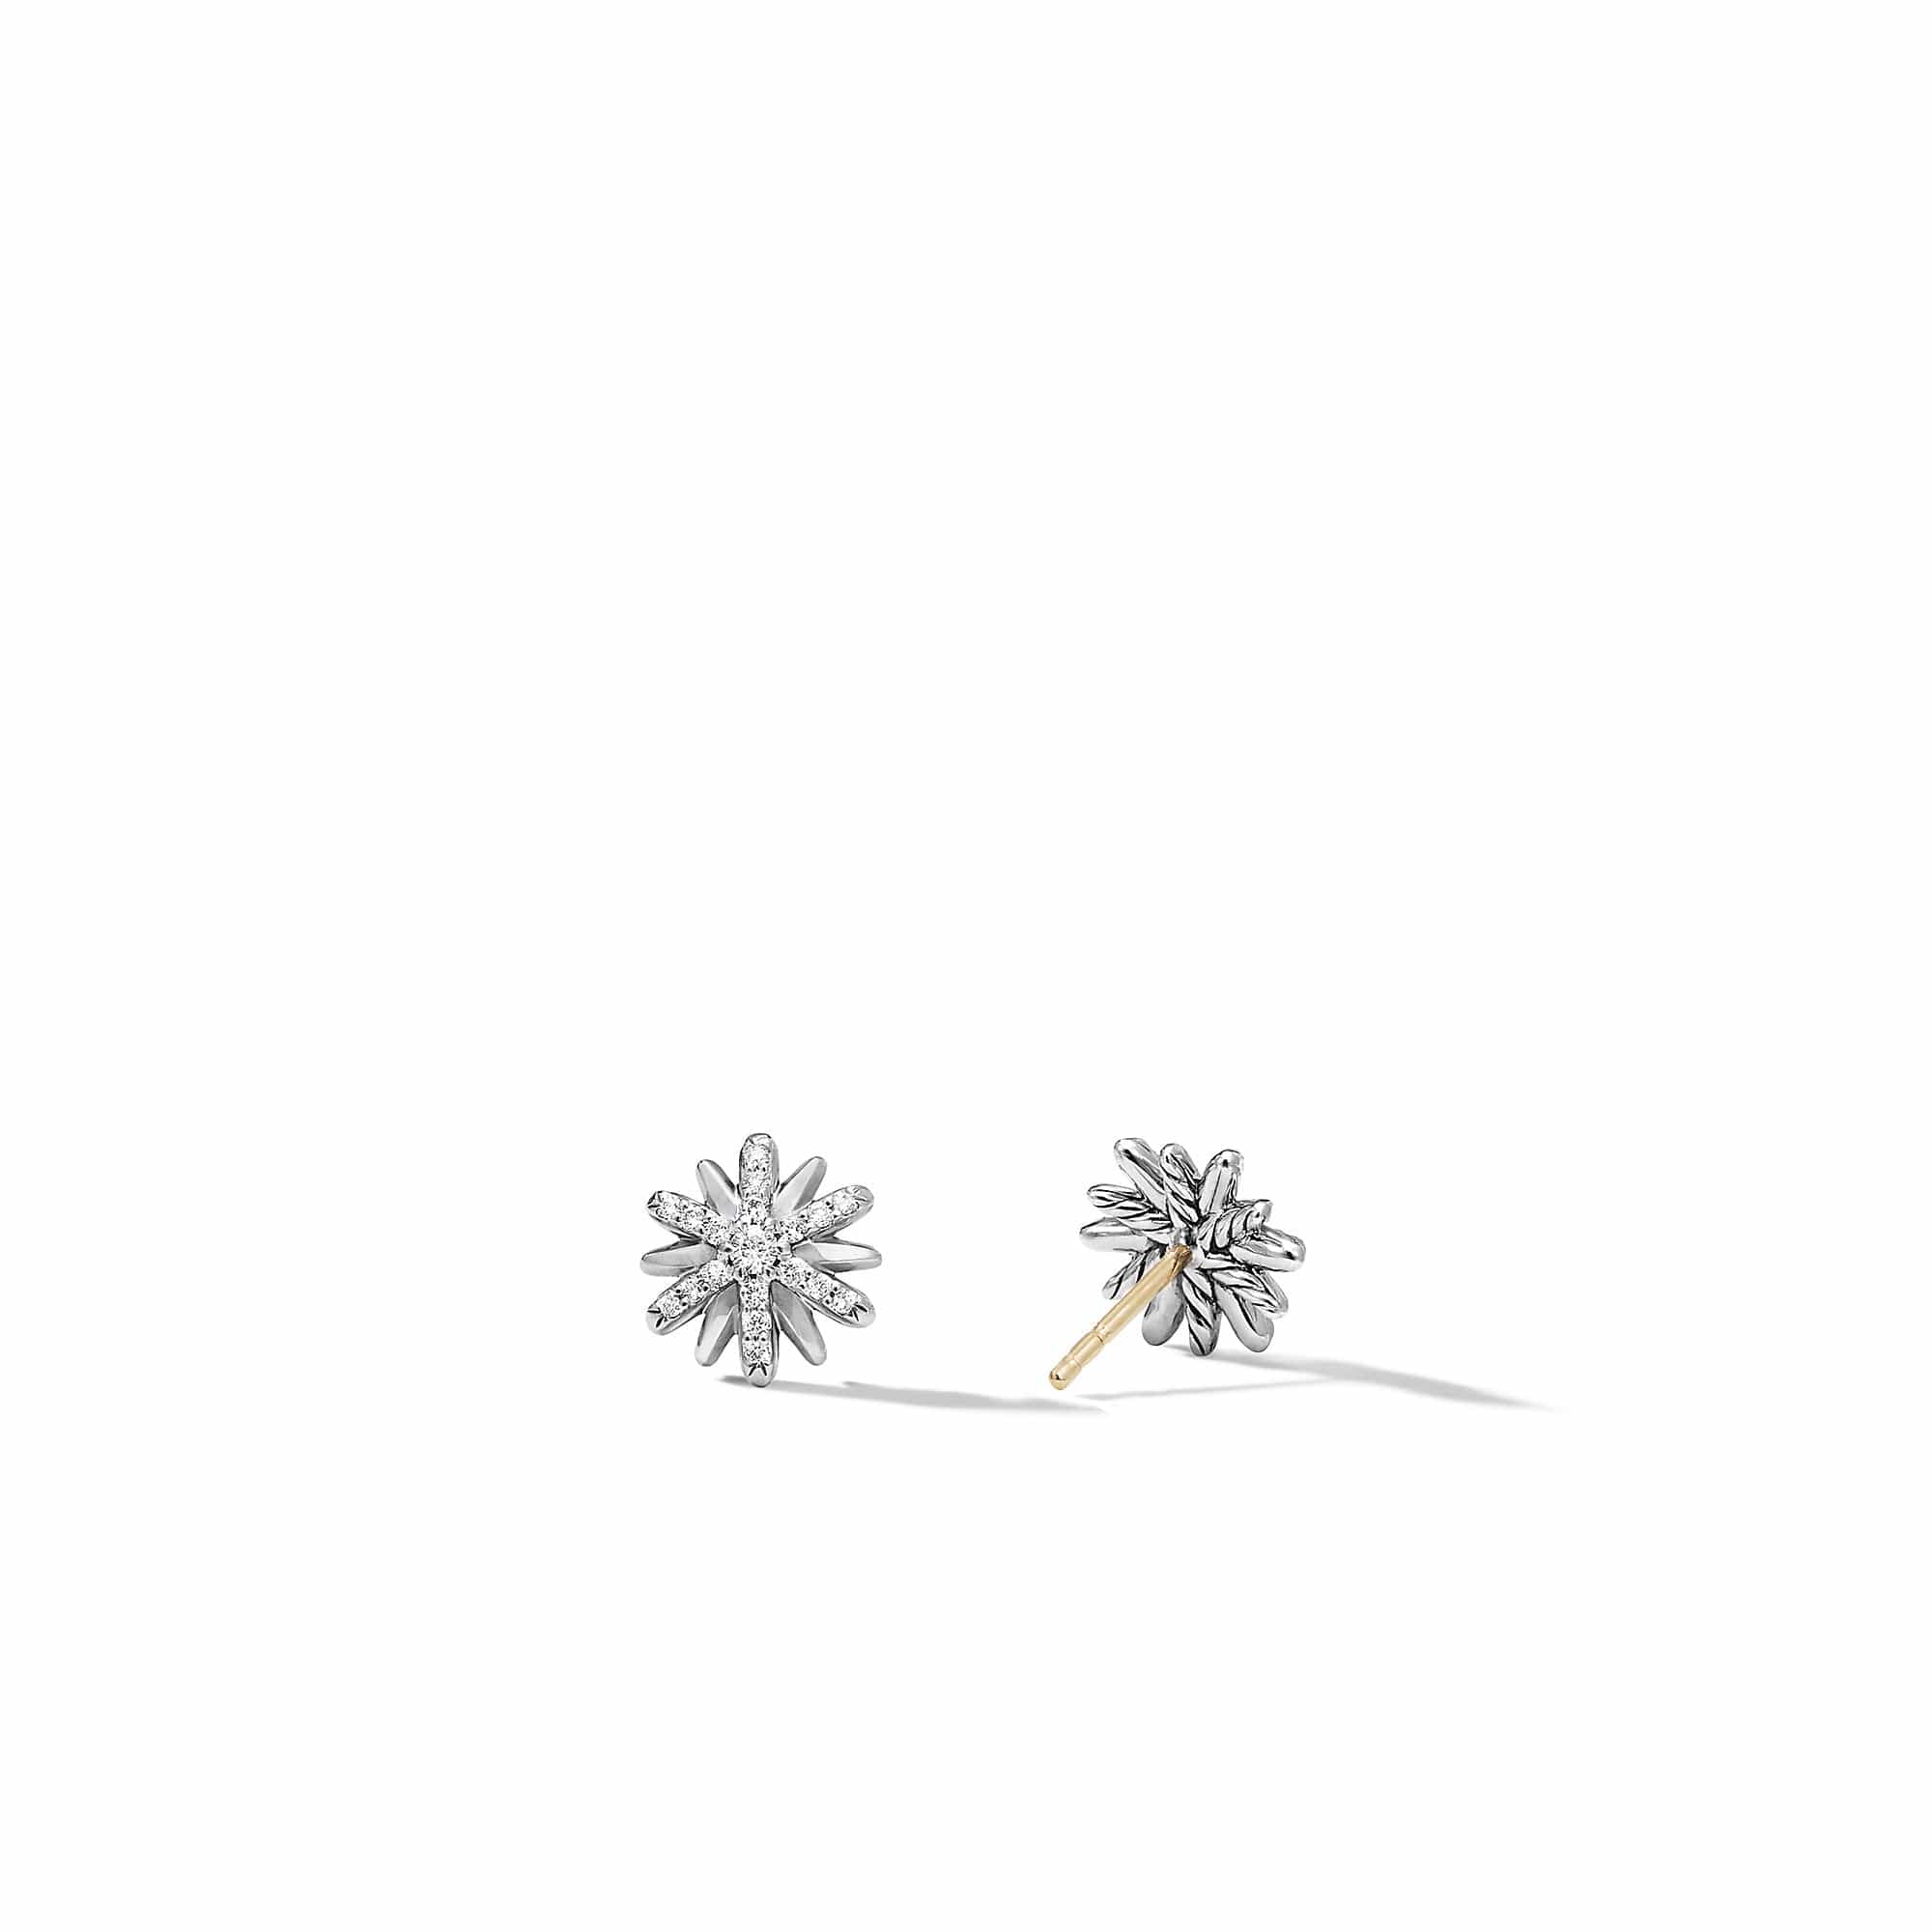 Petite Starburst Stud Earrings with Pavé Diamonds